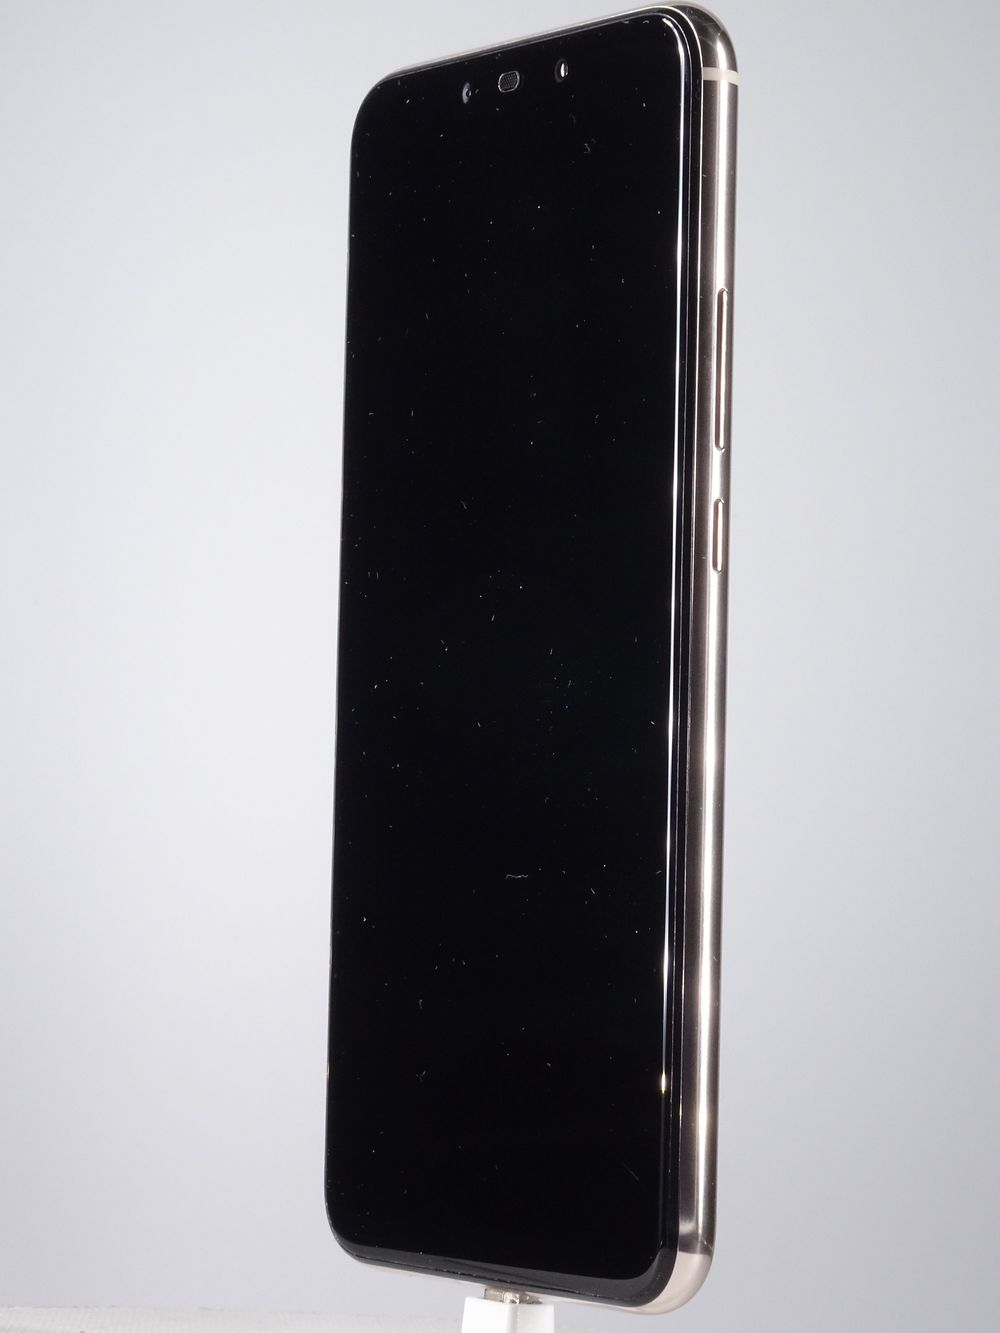 Мобилен телефон Huawei, Mate 20 Lite, 64 GB, Platinum Gold,  Като нов